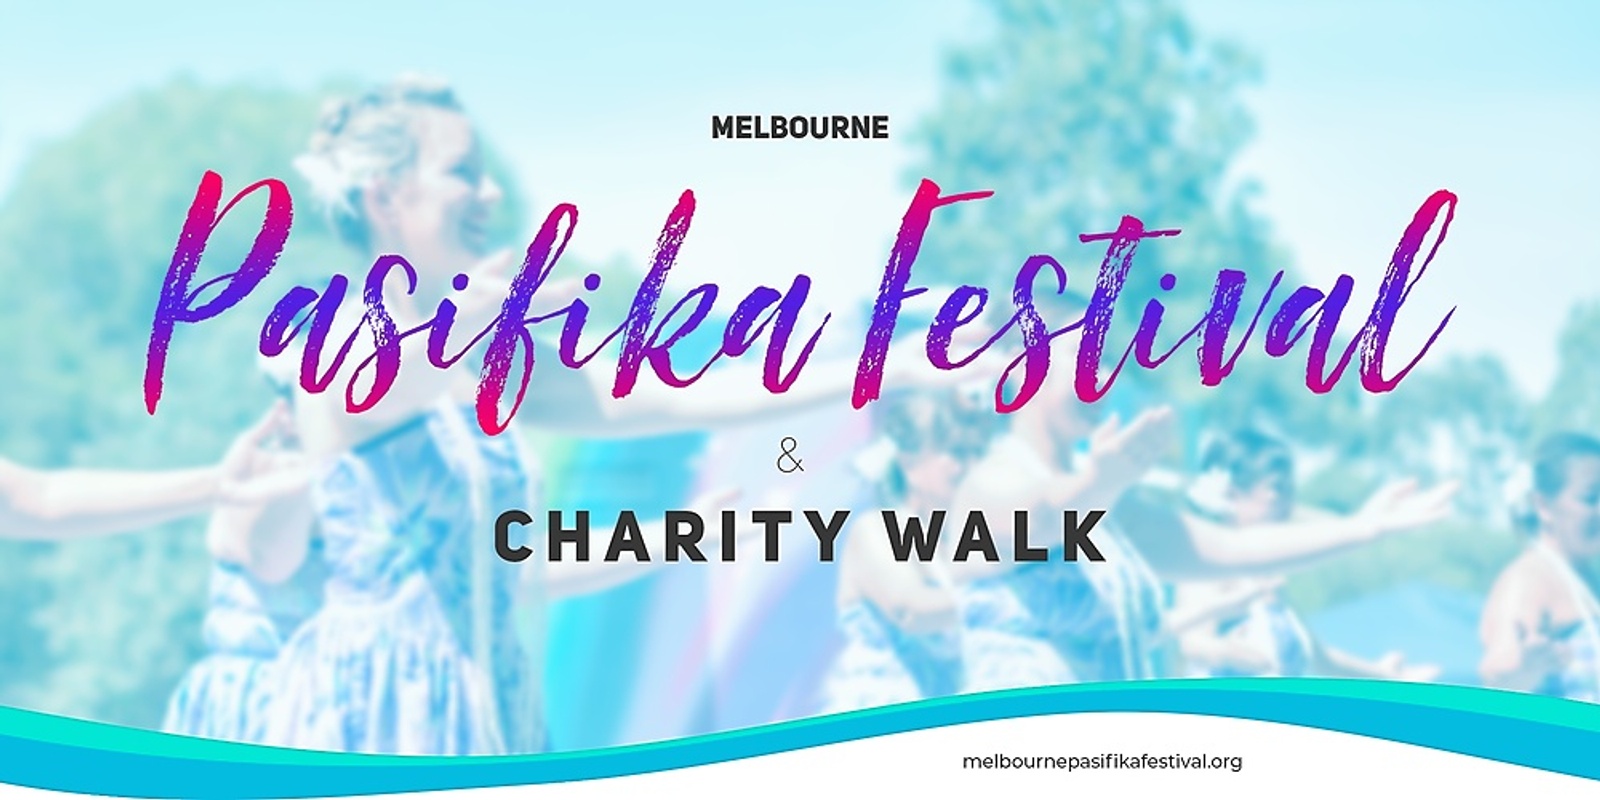 Banner image for Melbourne Pasifika Festival & Charity Walk